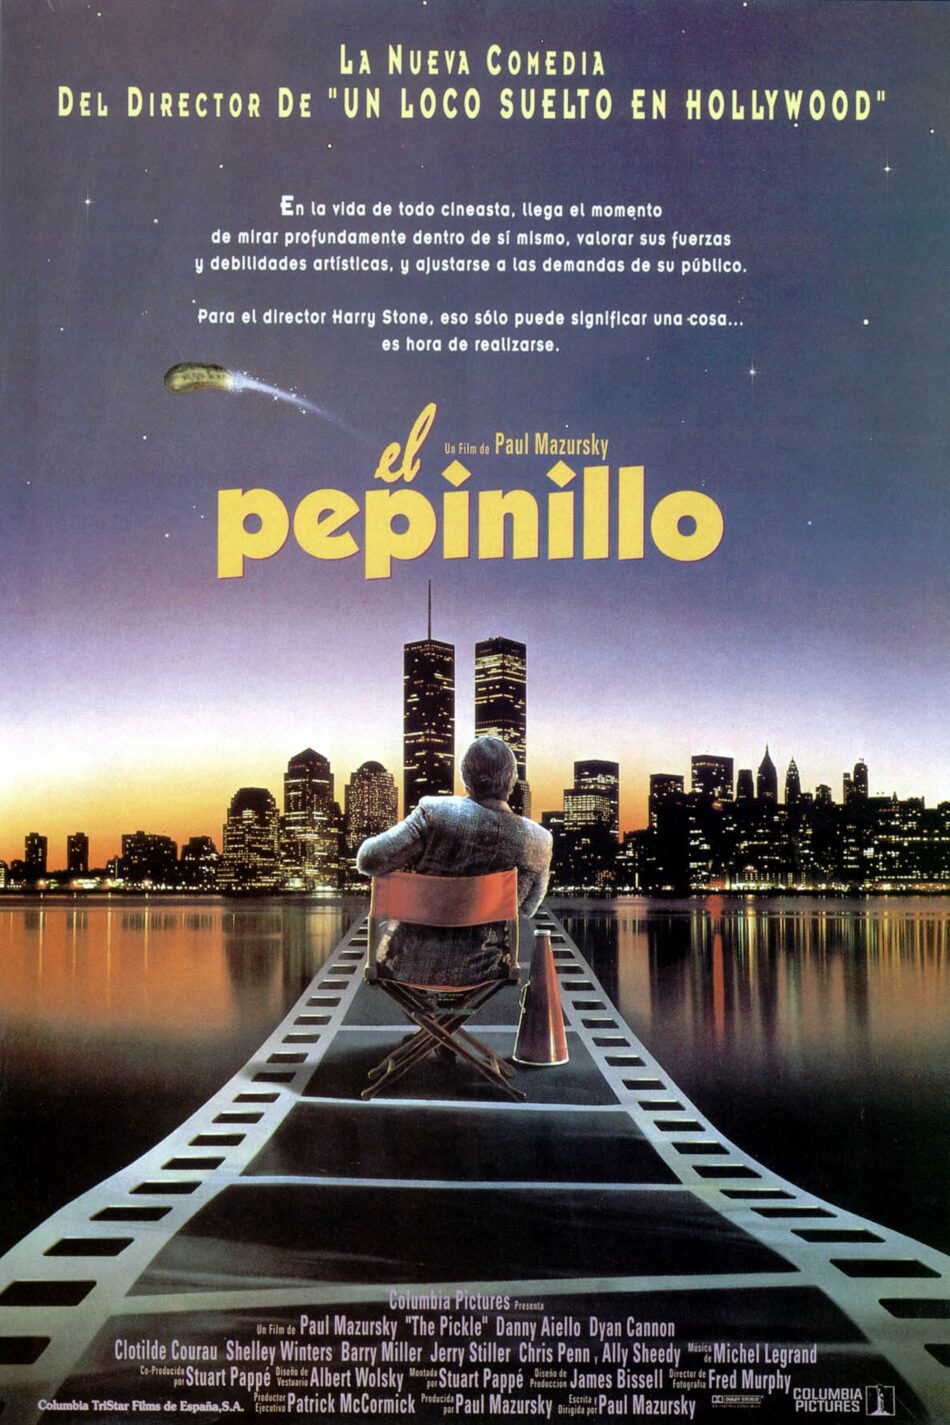 «El pepinillo»… The movie